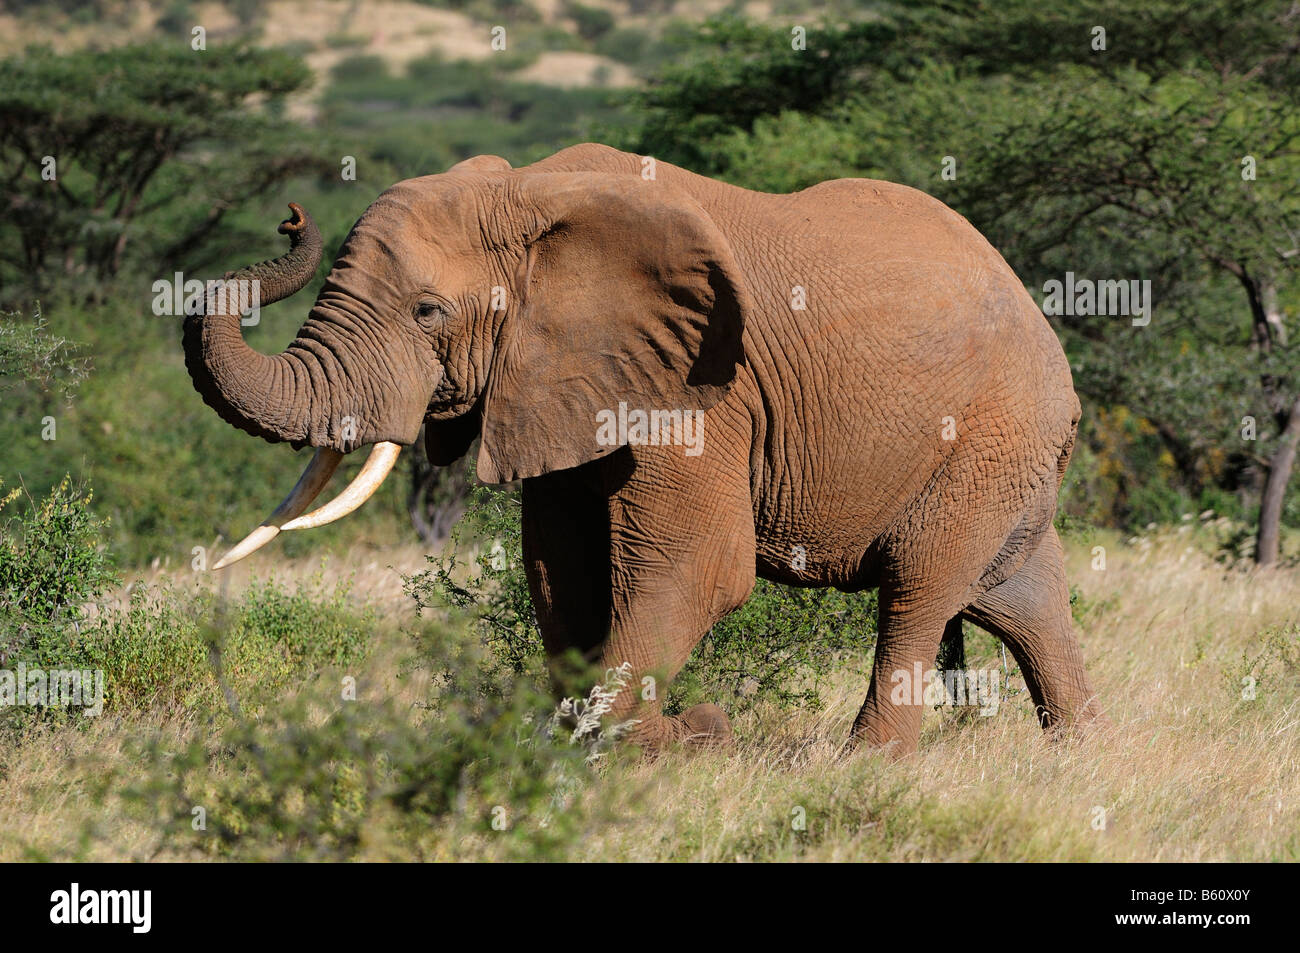 Bush Elefante africano (Loxodonta africana), el toro, la Reserva Nacional de Samburu, Kenya, Africa. Foto de stock